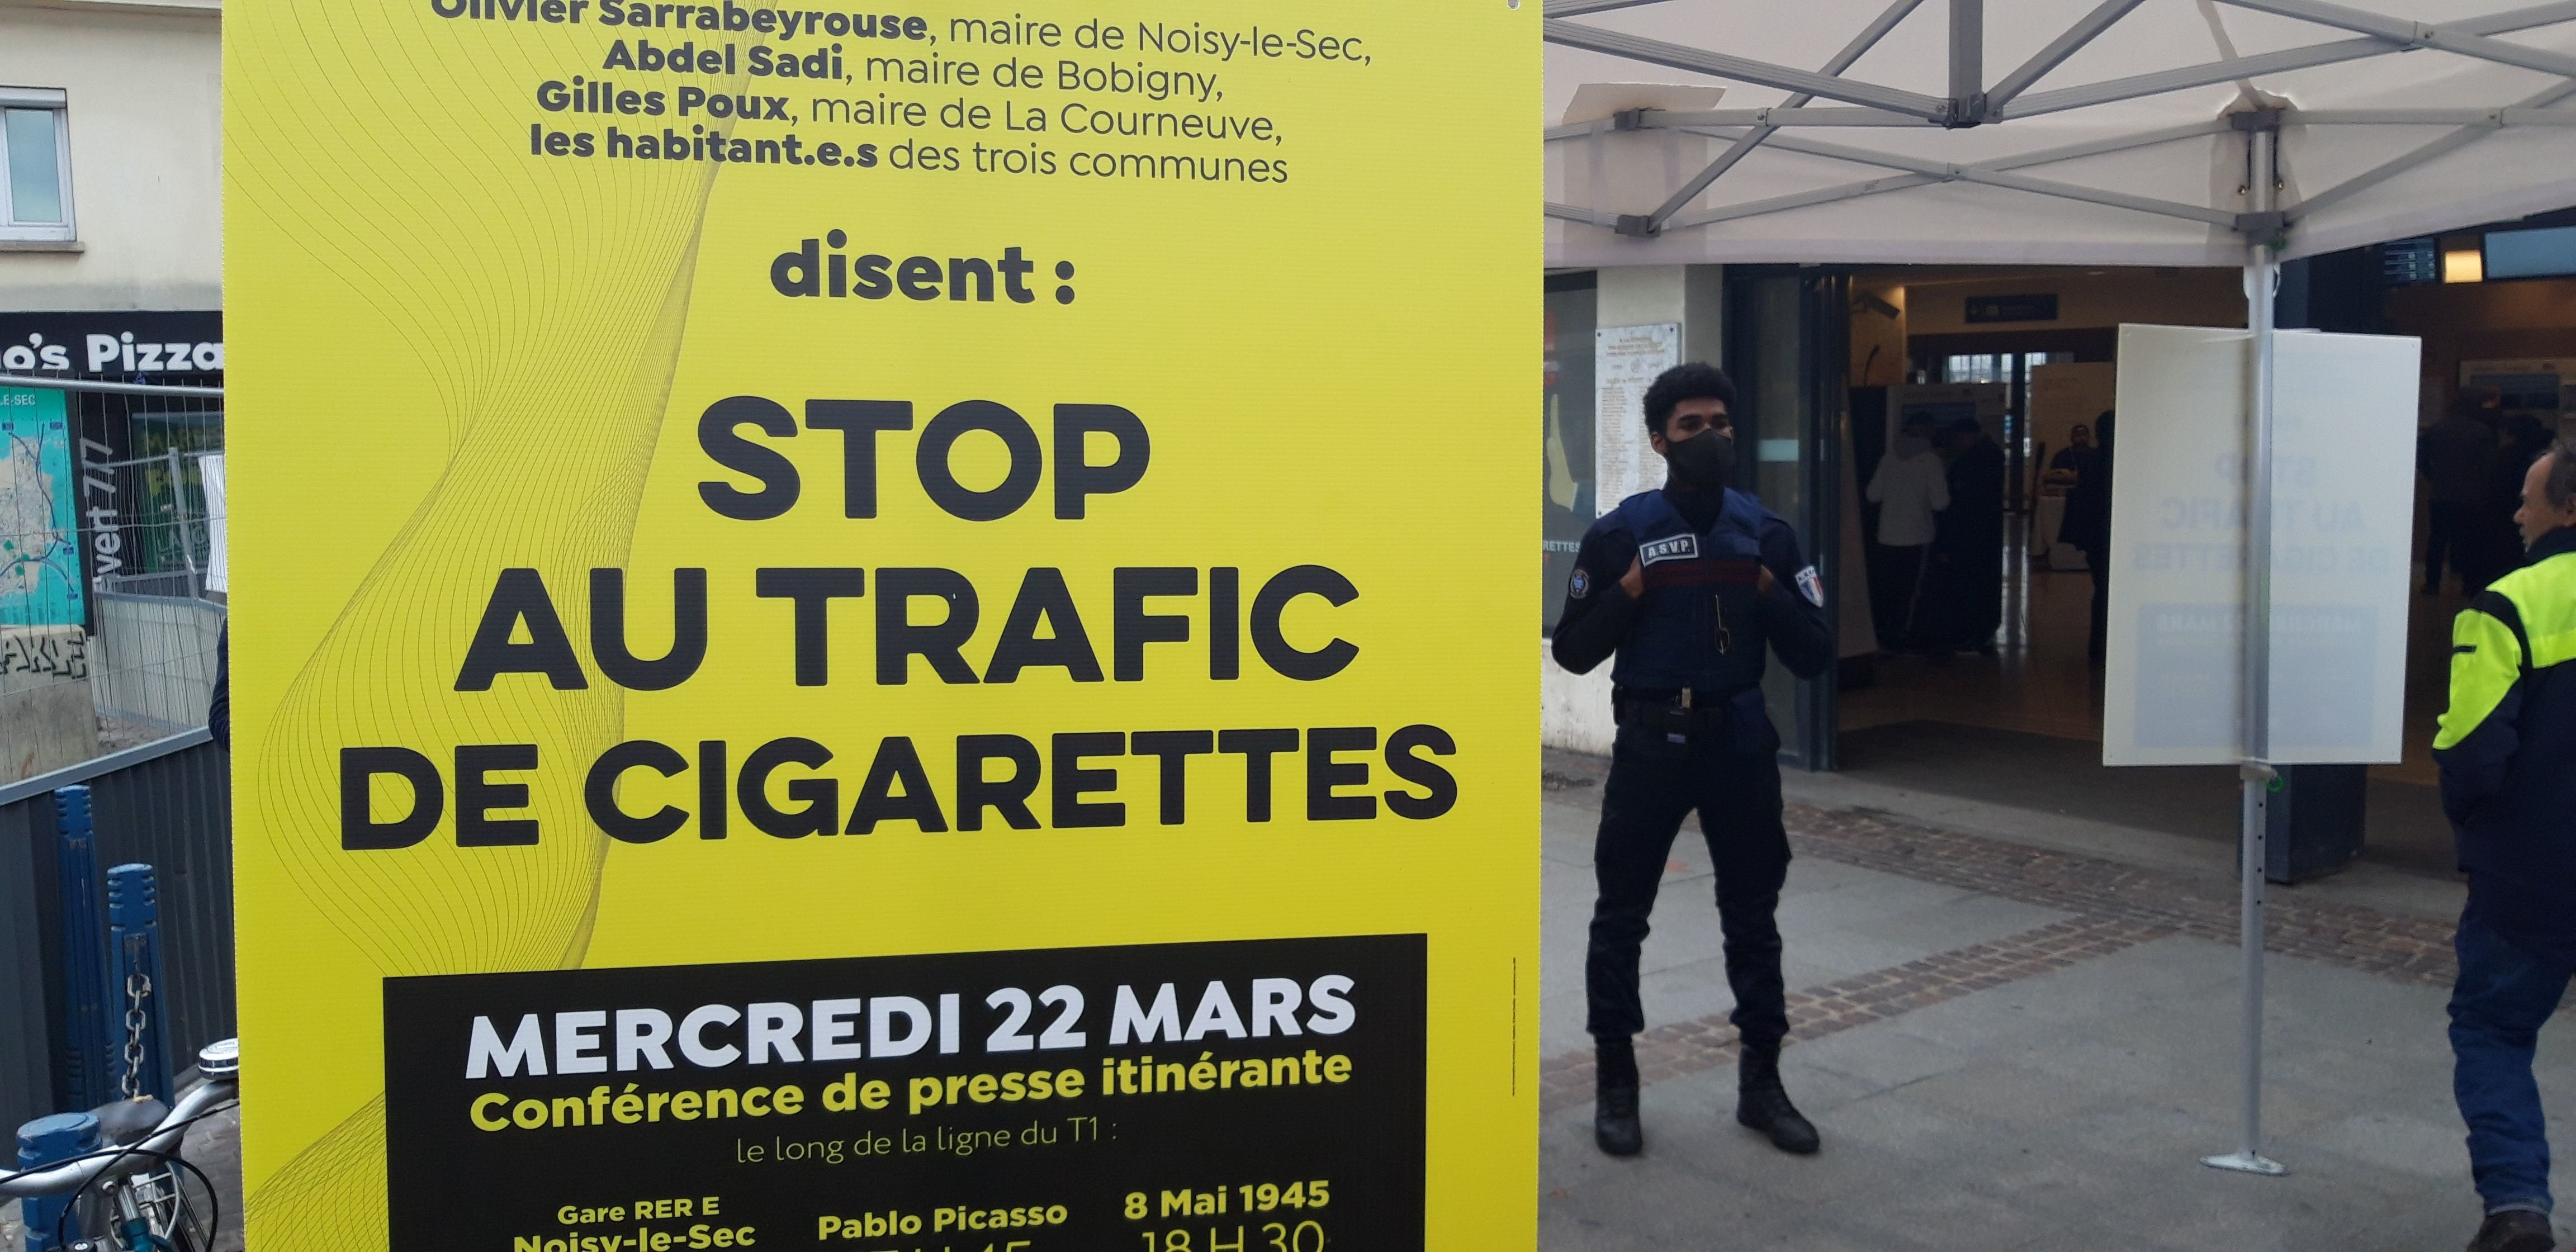 Noisy-le-Sec, mercredi 22 mars. Trois maires ont organisé une conférence de presse itinérante dans leurs villes respectives, massivement touchées par la vente de cigarettes de contrefaçon. LP/N.R.